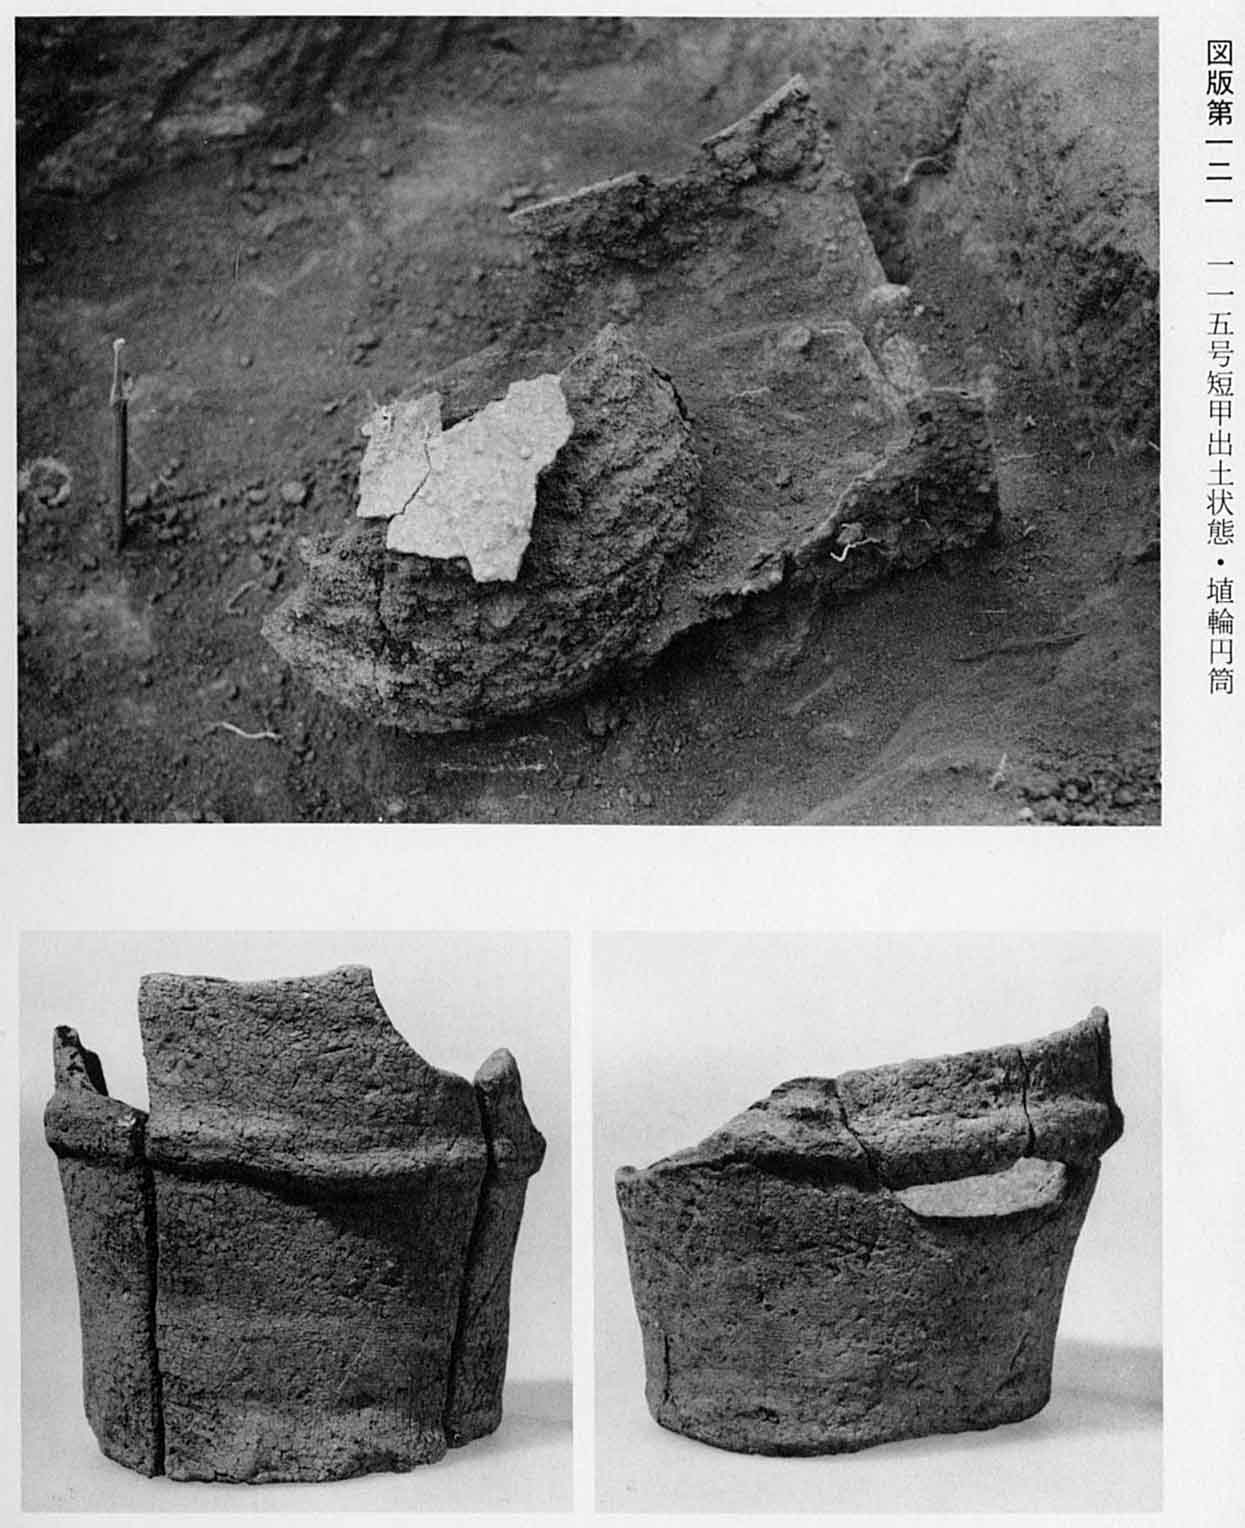 短い甲が出土した状態で撮られた写真と、埴輪の円筒が2枚撮影されている、図版121 115号短甲出土状態・円筒埴輪のモノクロ写真